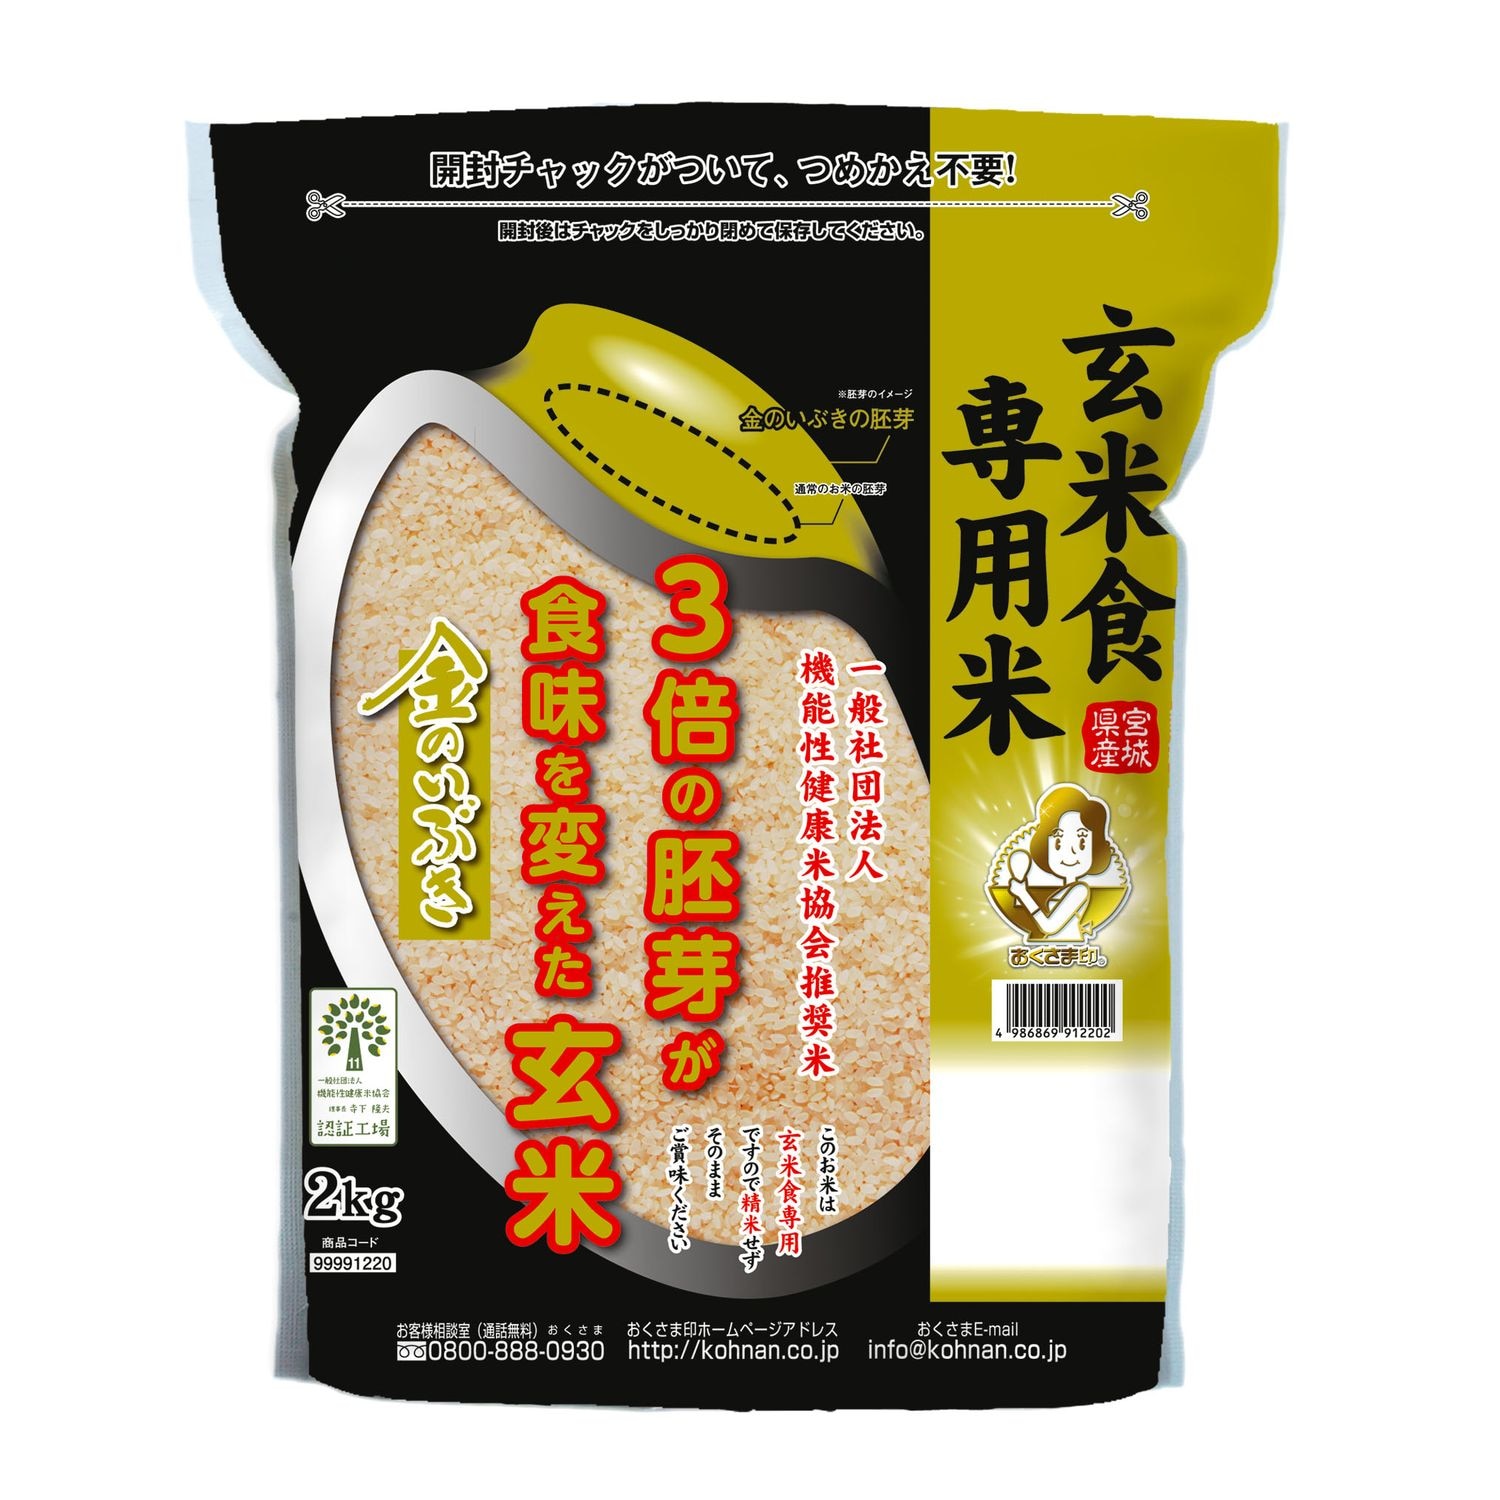 【米匠庵】玄米食専用 宮城県産金のいぶき 4kg画像